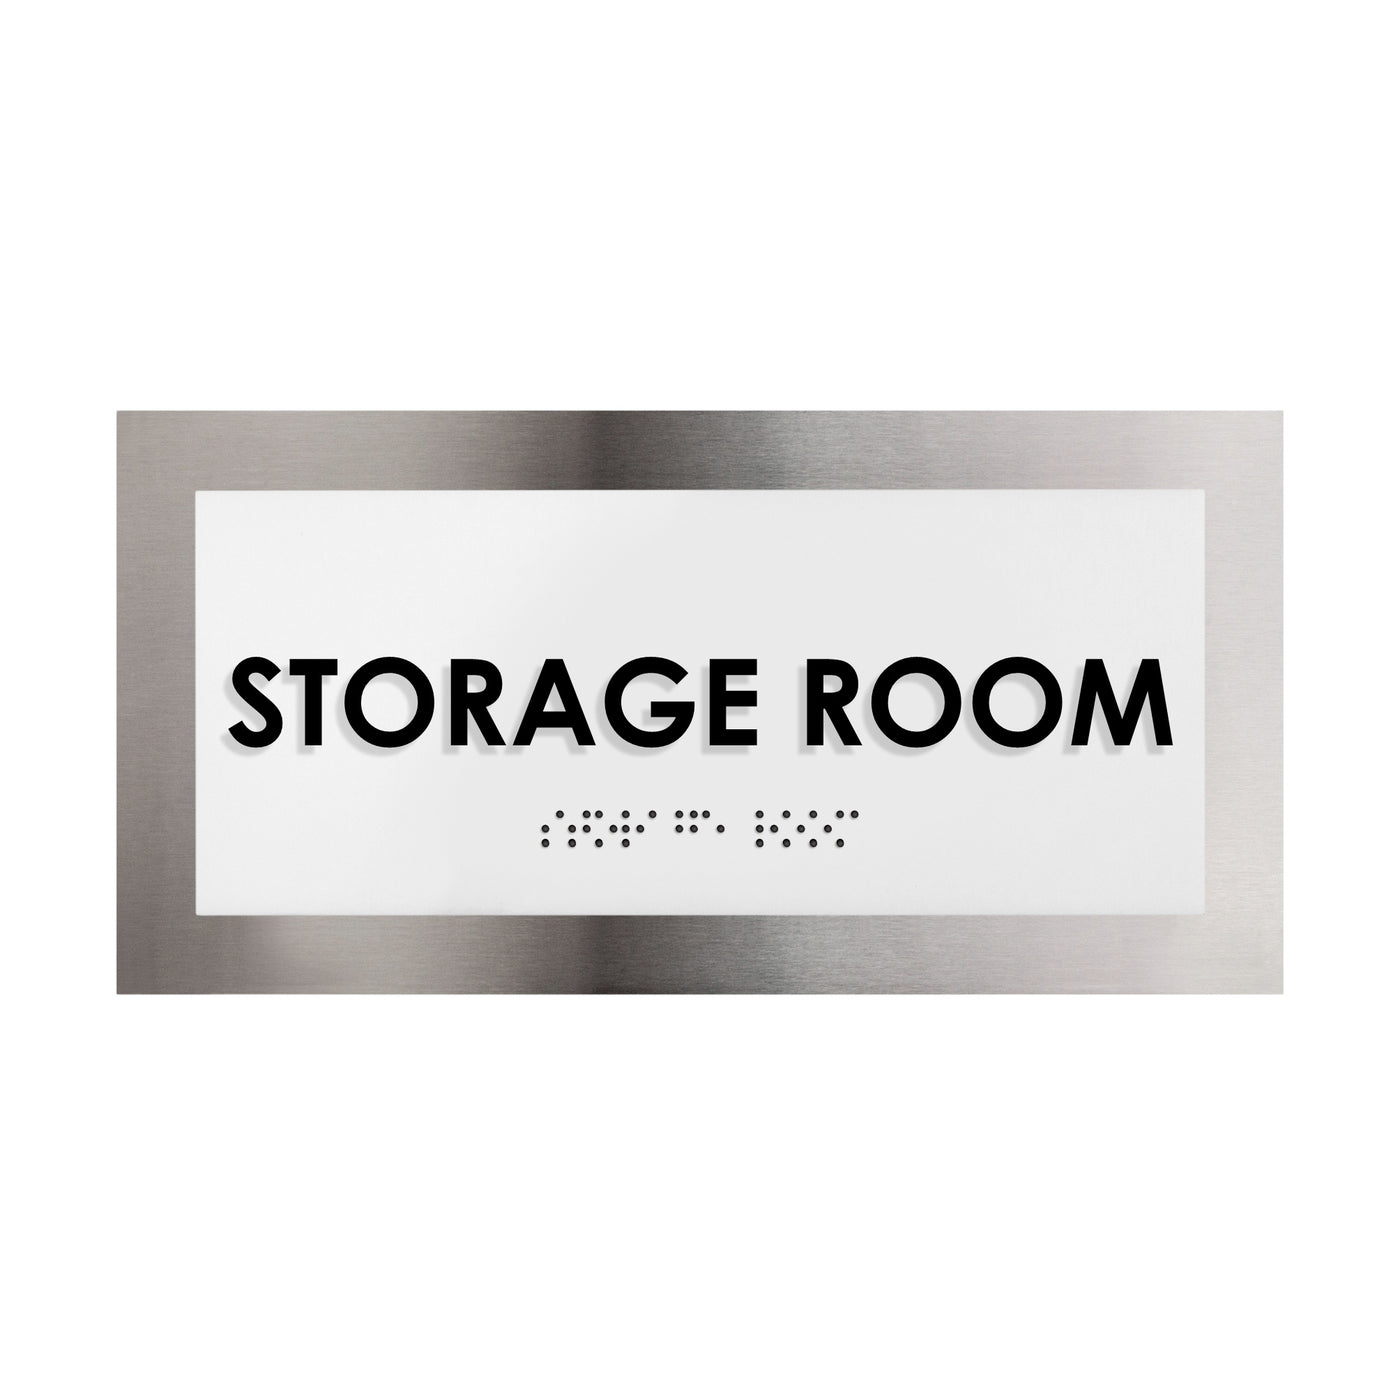 Door Signs - Storage Room Door Sign - Stainless Steel Plate - "Modern" Design